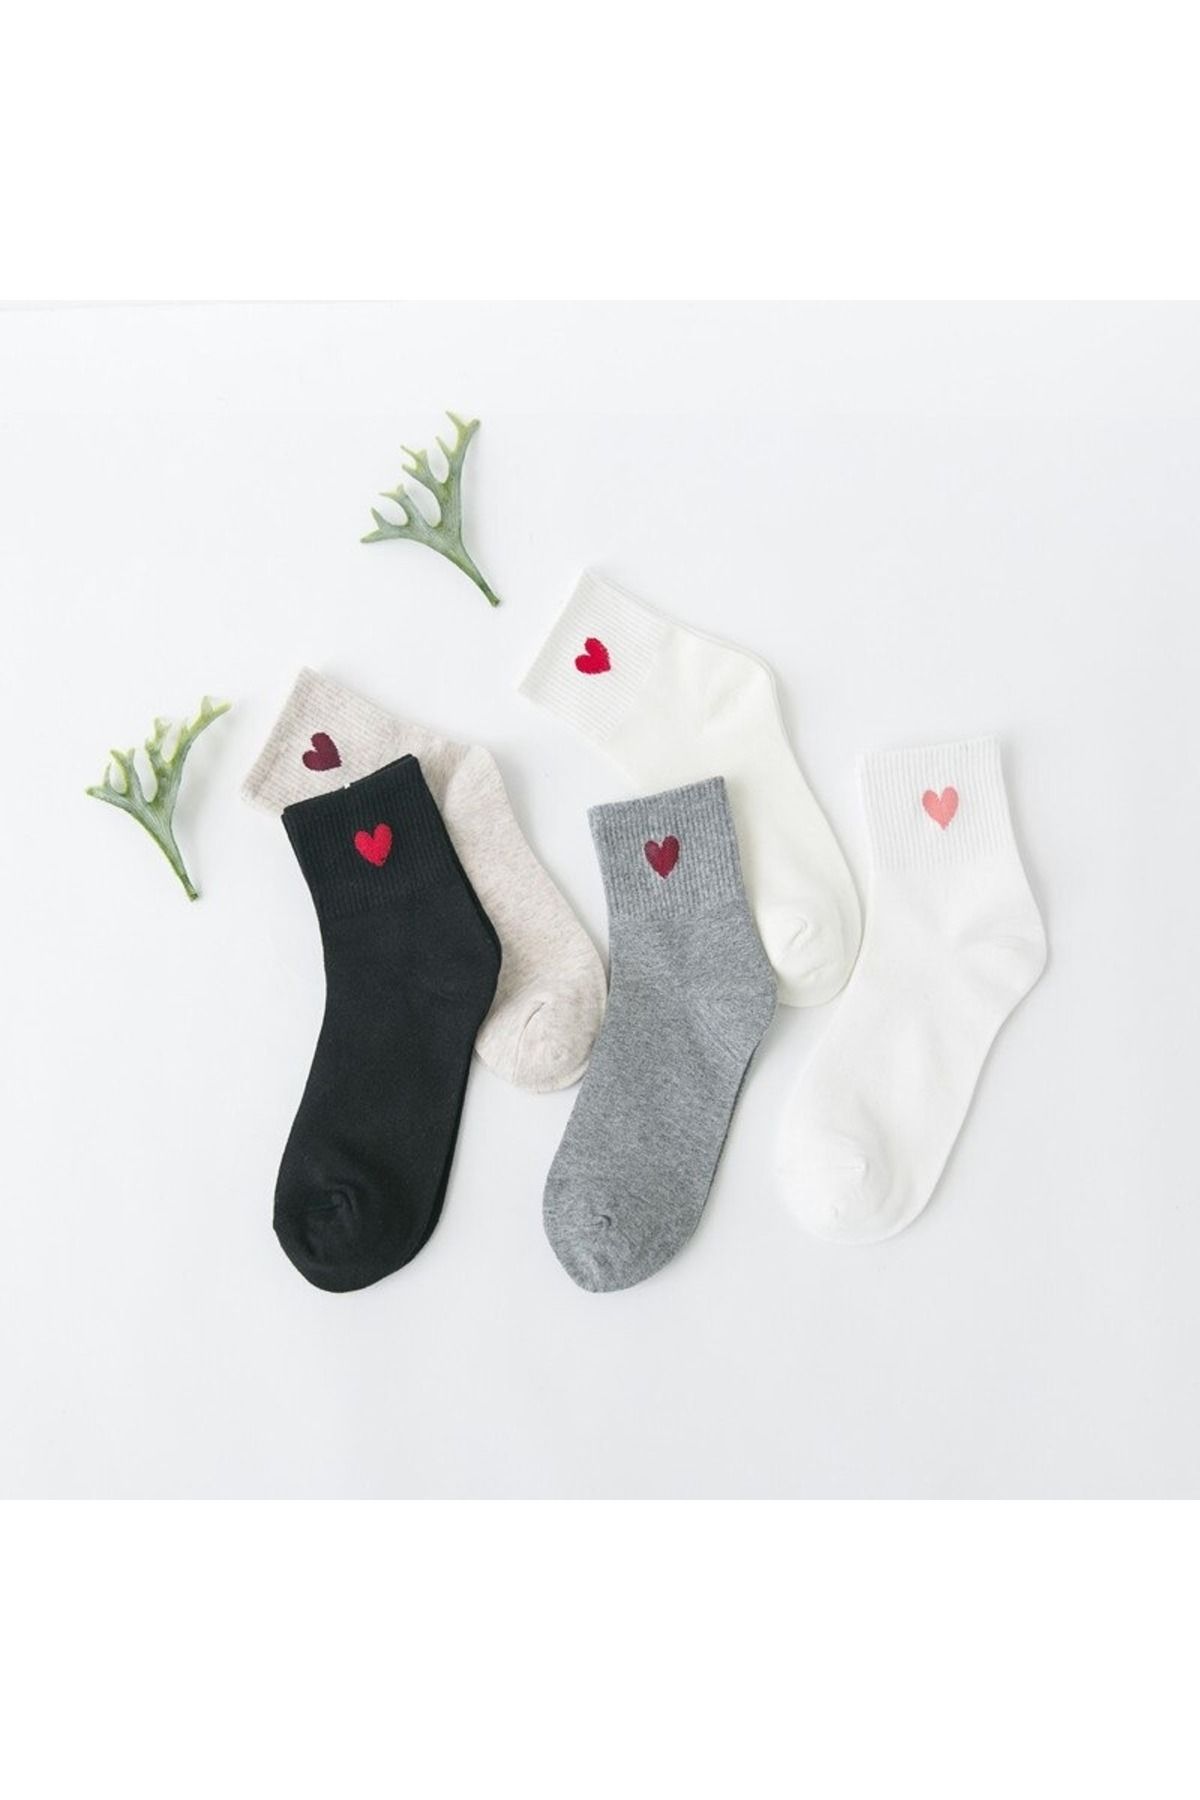 çorapmanya 5 Çift Çok Renkli Kalp Desenli Yarım Konç Kadın Çorap